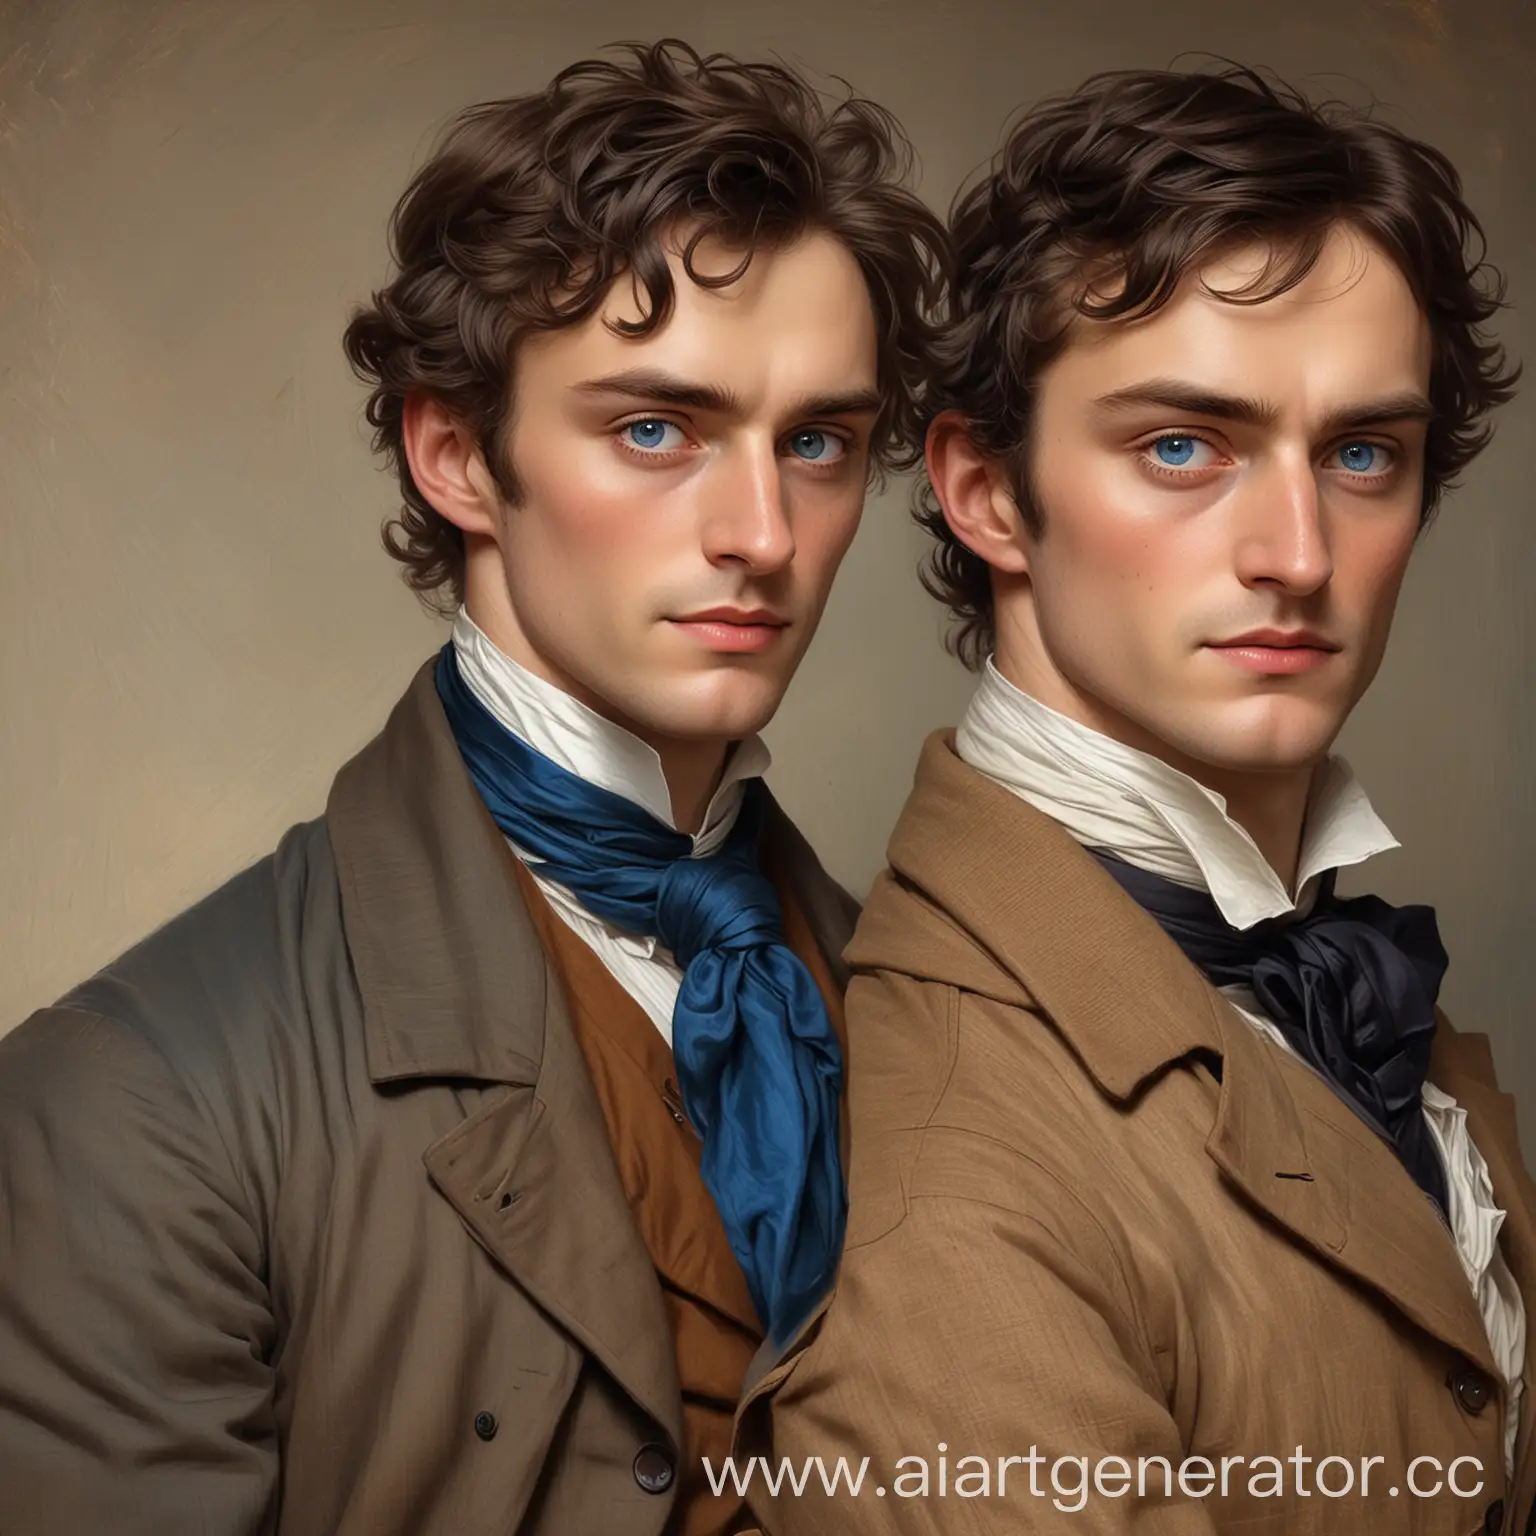 нарисуй двух мужчин, один из которых властный с тонкими, аристократичными чертами лица, стройной фигурой, глубоким взглядом синих глаз холодно смотрит на высокого мужчину с карими тёплыми глазами, слегка потрёпанный в одежде секретаря 19 века